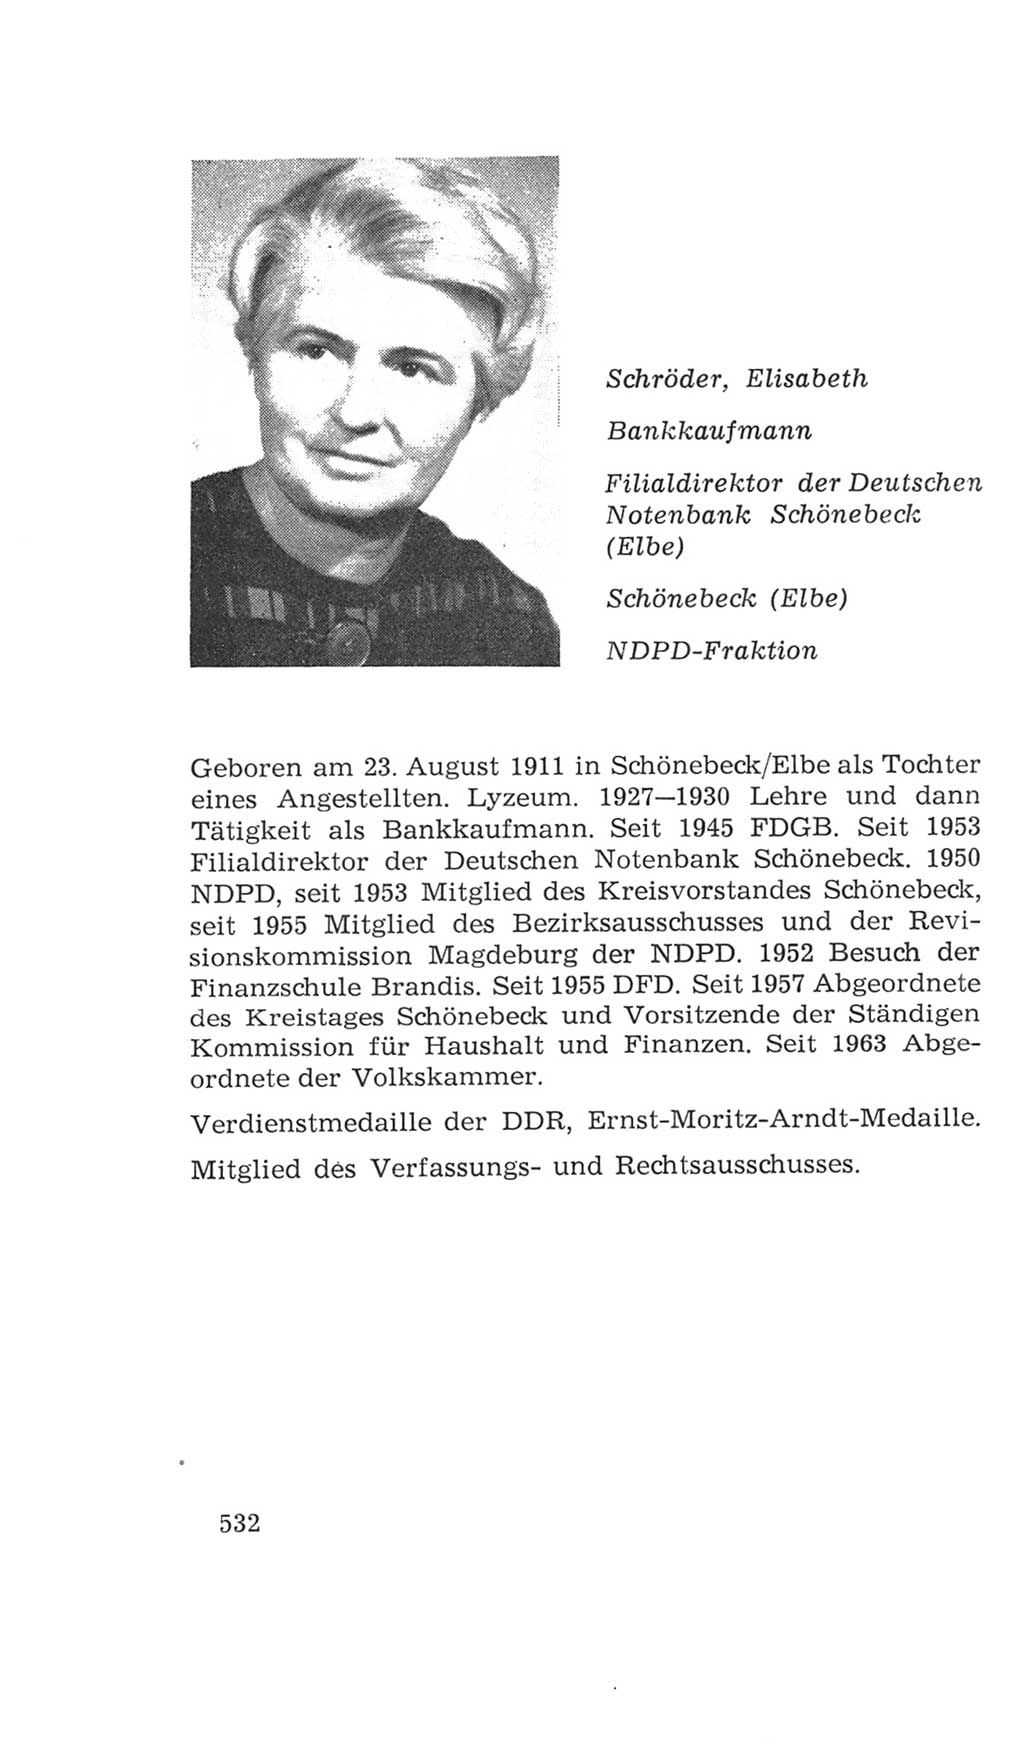 Volkskammer (VK) der Deutschen Demokratischen Republik (DDR), 4. Wahlperiode 1963-1967, Seite 532 (VK. DDR 4. WP. 1963-1967, S. 532)